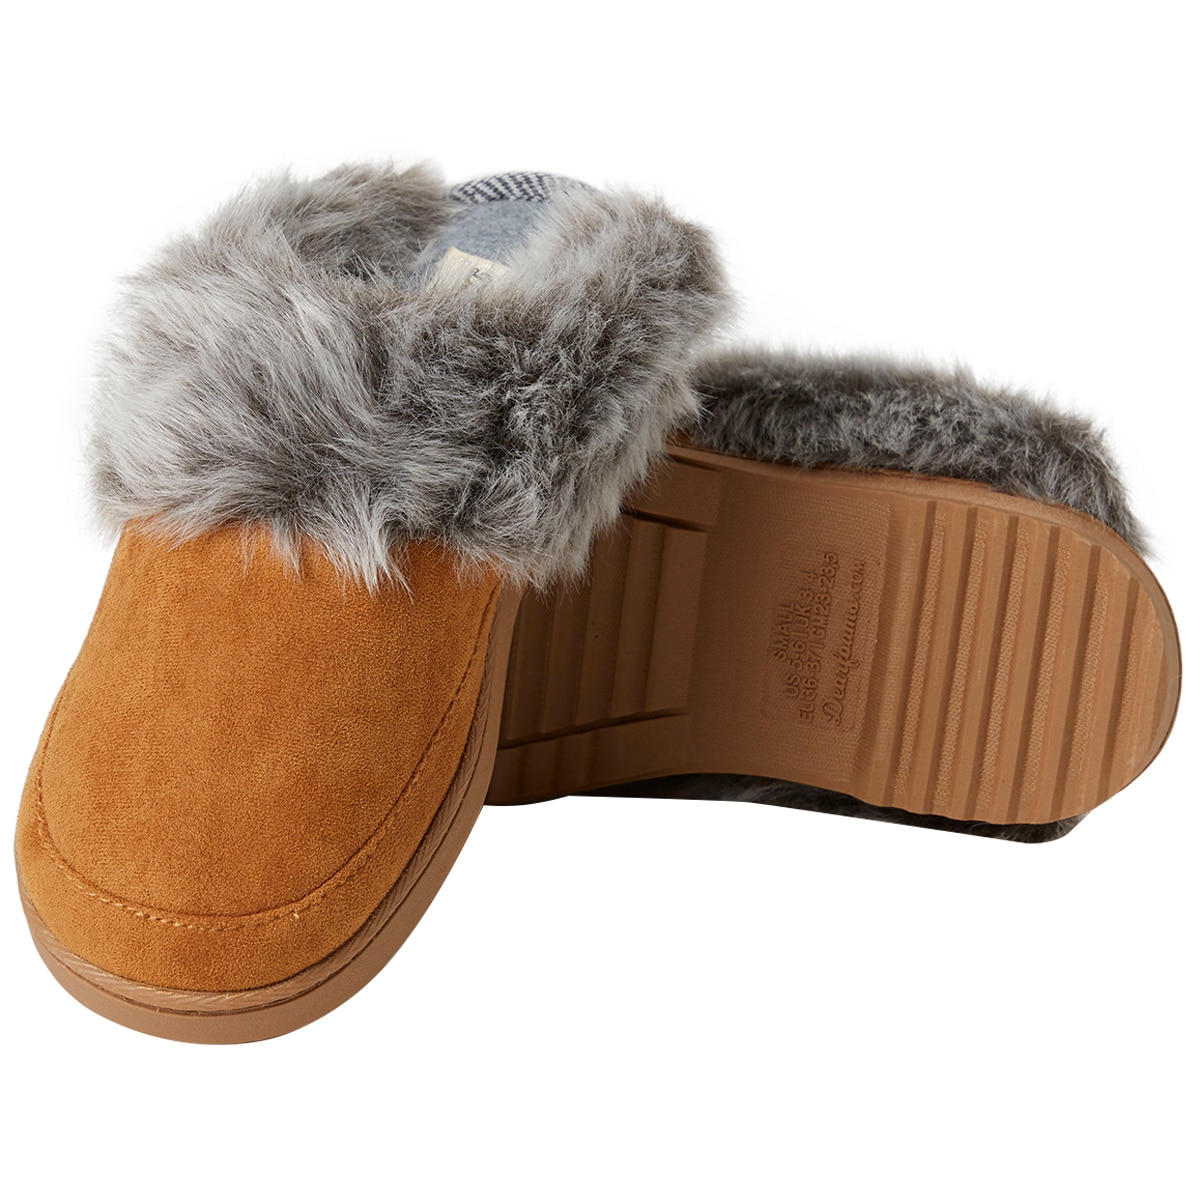 Buy > dearfoam slippers > in stock